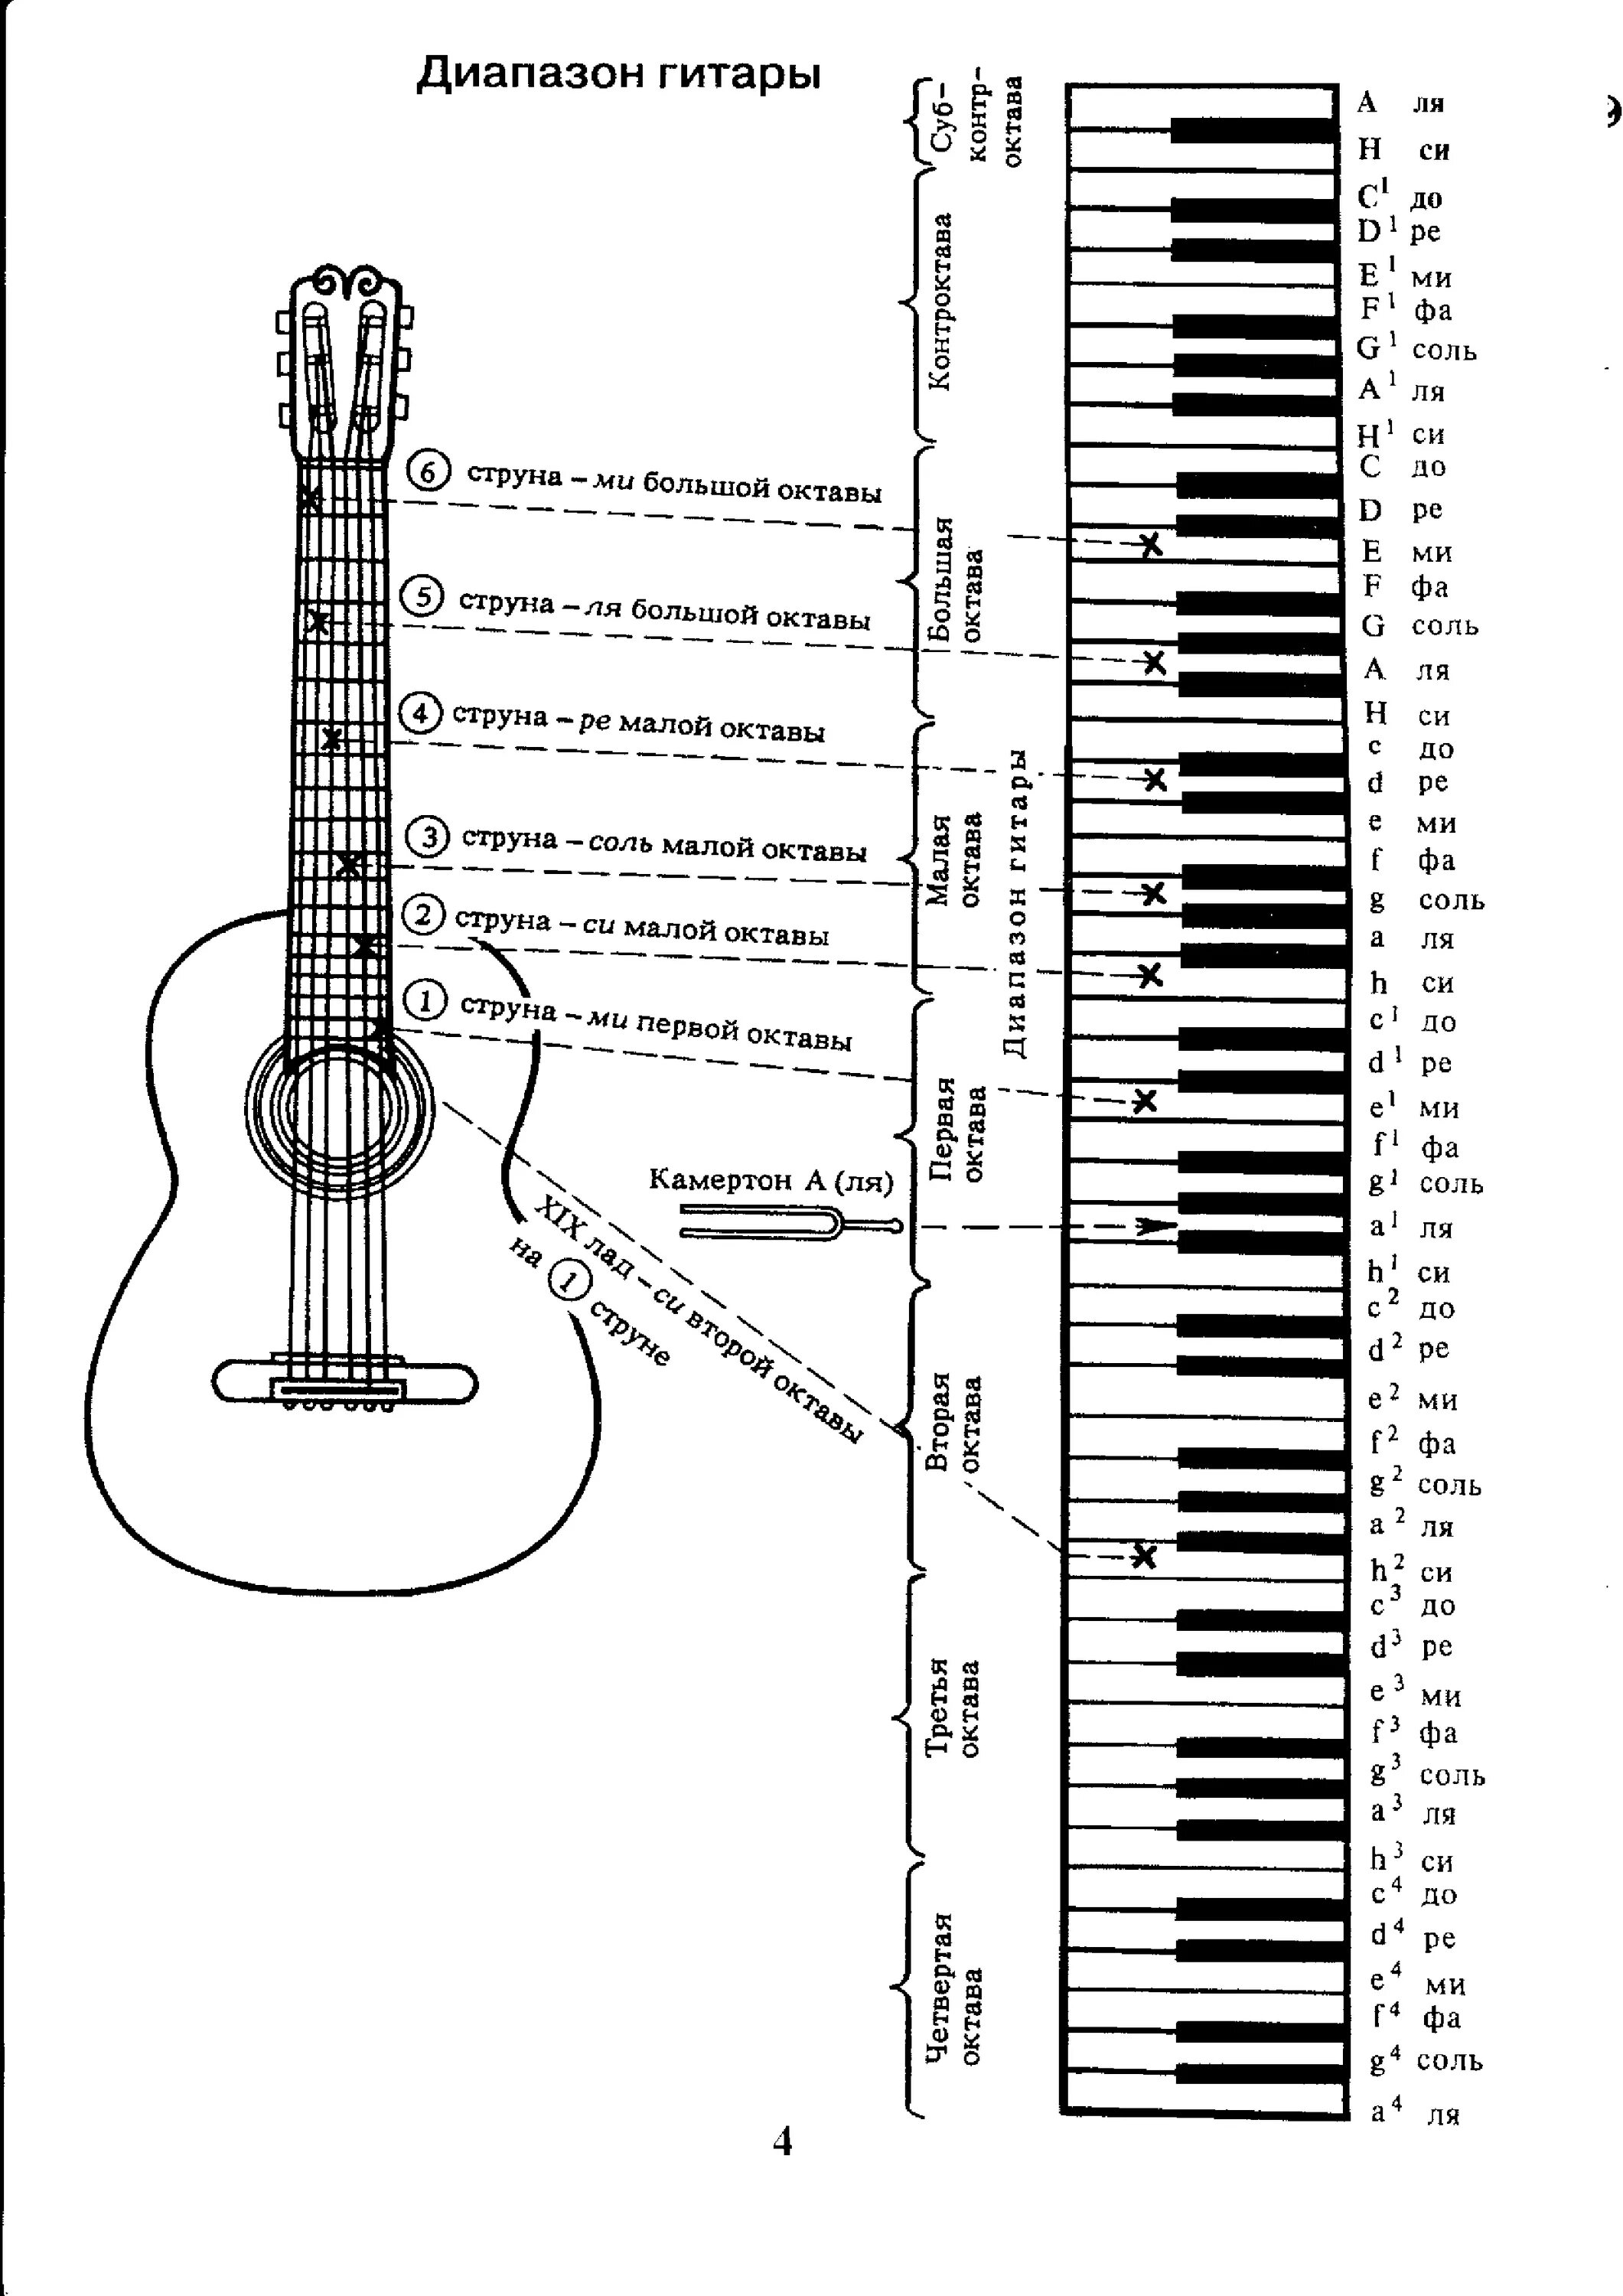 Аппликатура аккордов для гитары 6 струн для начинающих. Ноты на гитарном грифе 6 струнной. Лады на 6 струнной гитаре для начинающих. Схема гитары классической 6 струнной.